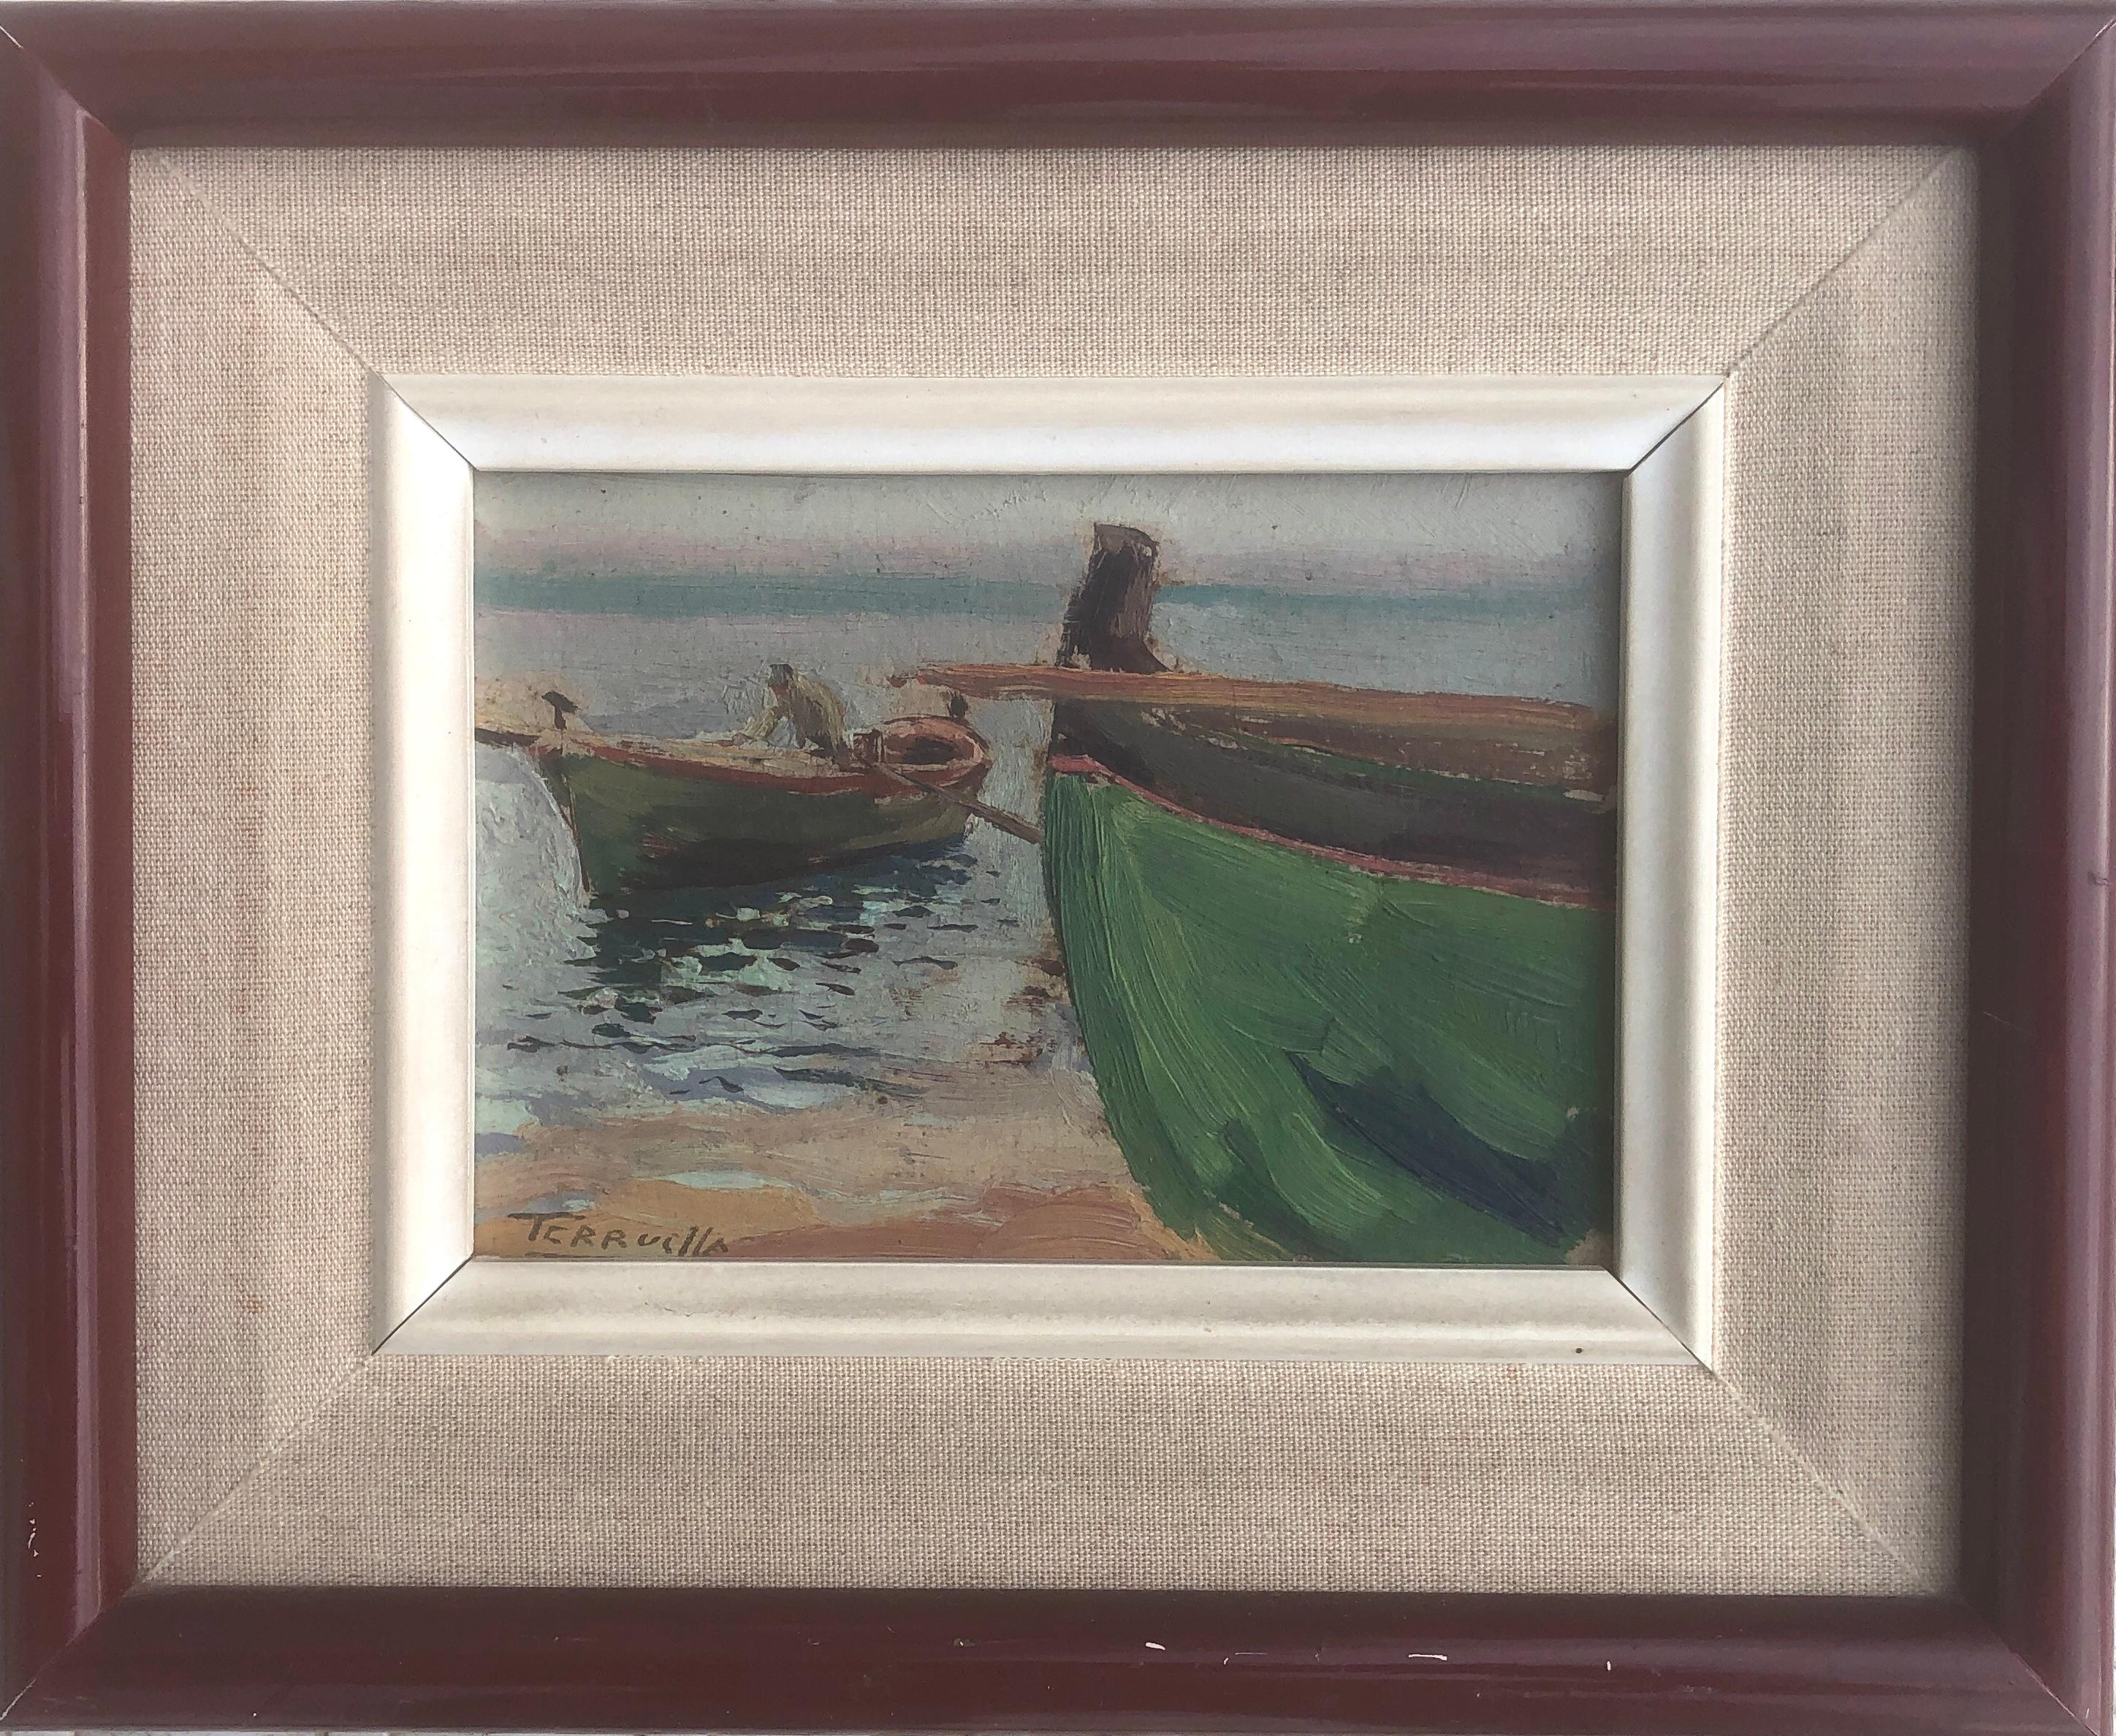 Bateaux sur la plage huile sur carton peinture impressionniste paysage marin espagnol - Painting de Joaquin Terruella Matilla